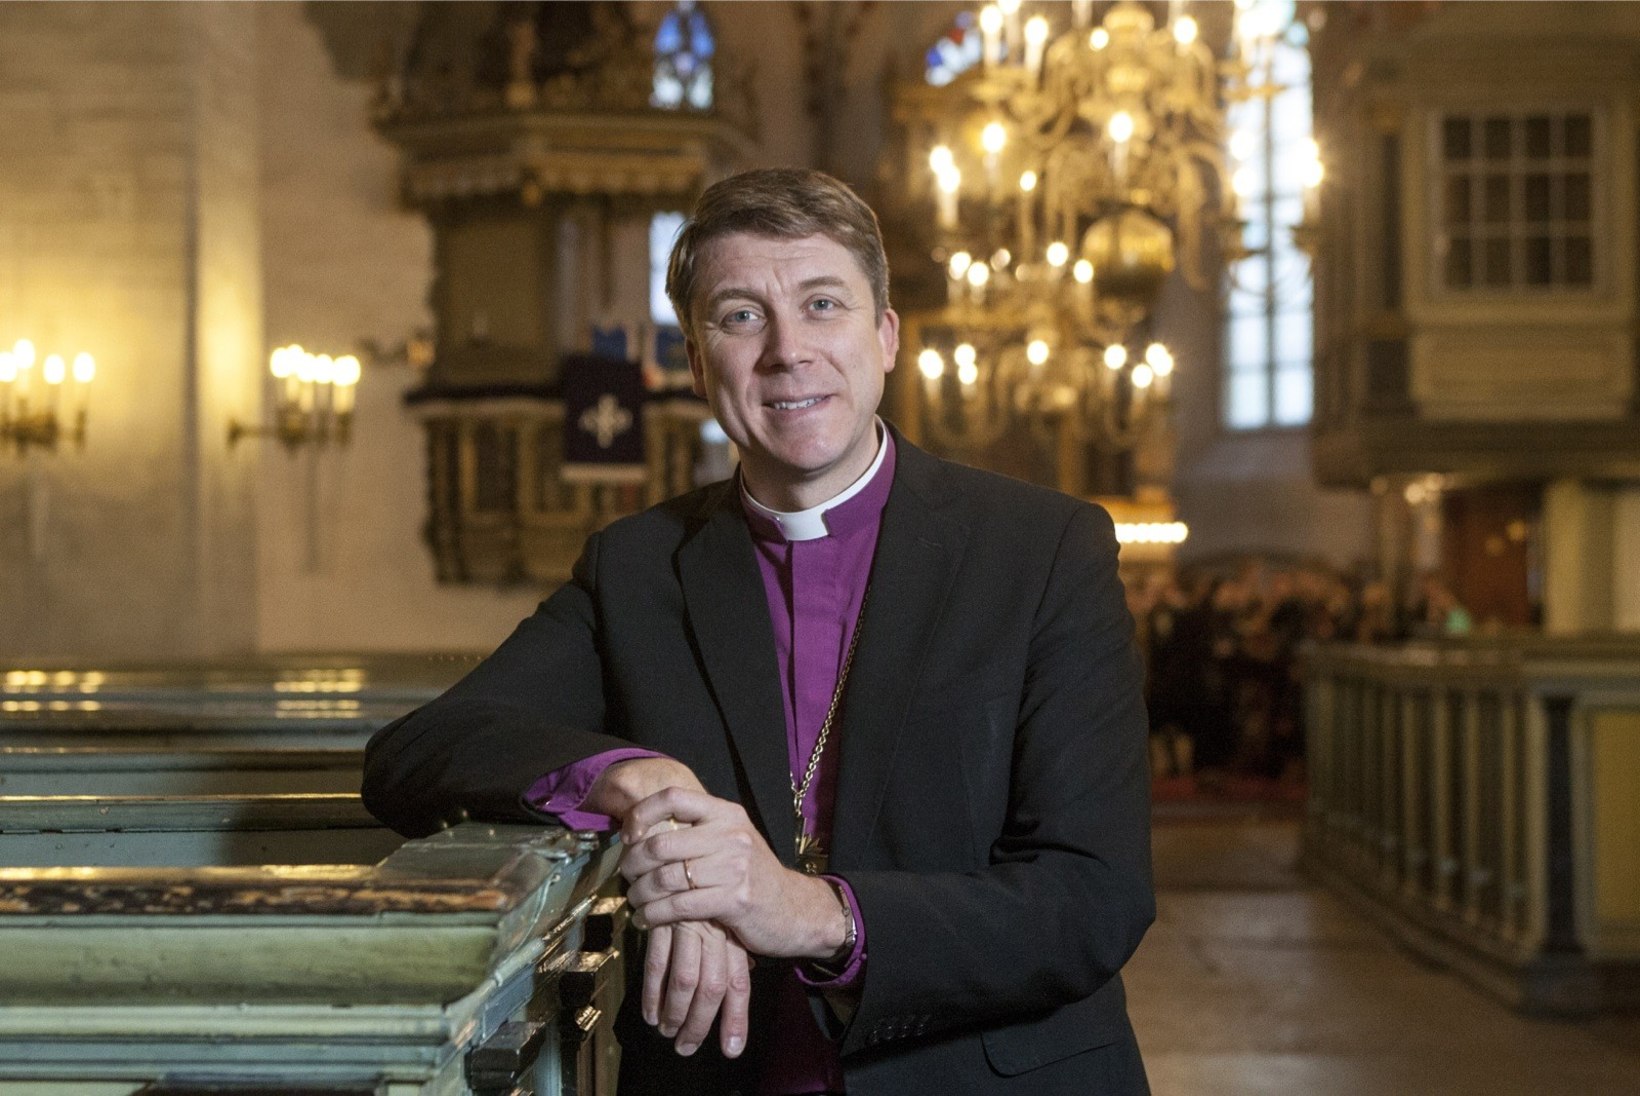 PAASTUAEG: Peapiiskop otsustas loobuda ülestõusmispühadeni Facebookist